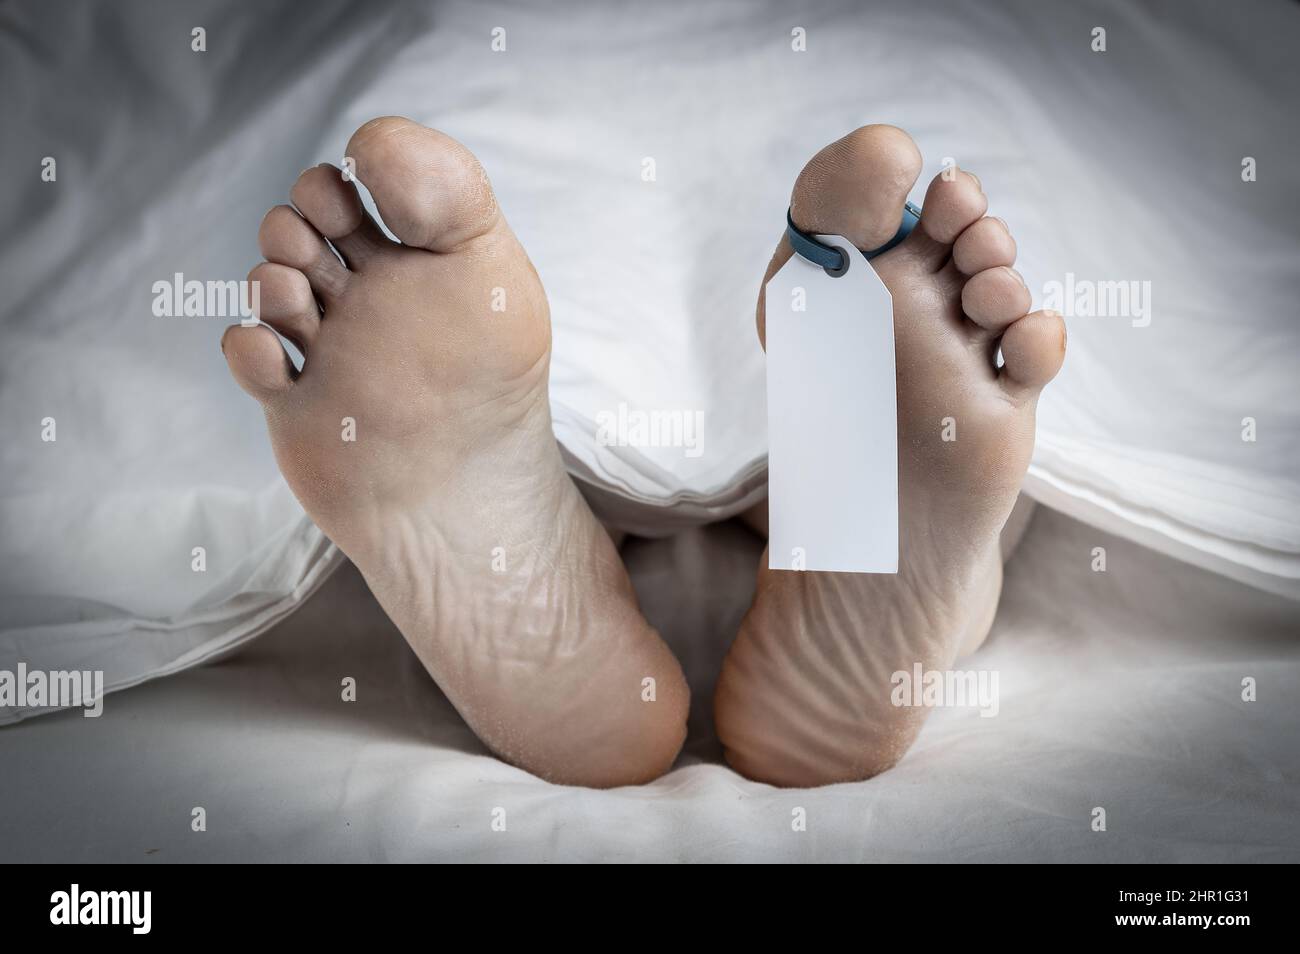 Primo piano dei piedi di un cadavere coperto in un foglio; con un'etichetta vuota legata alla punta del piede sinistro; con un'aggiunta di vignetta e spazio per la copia Foto Stock